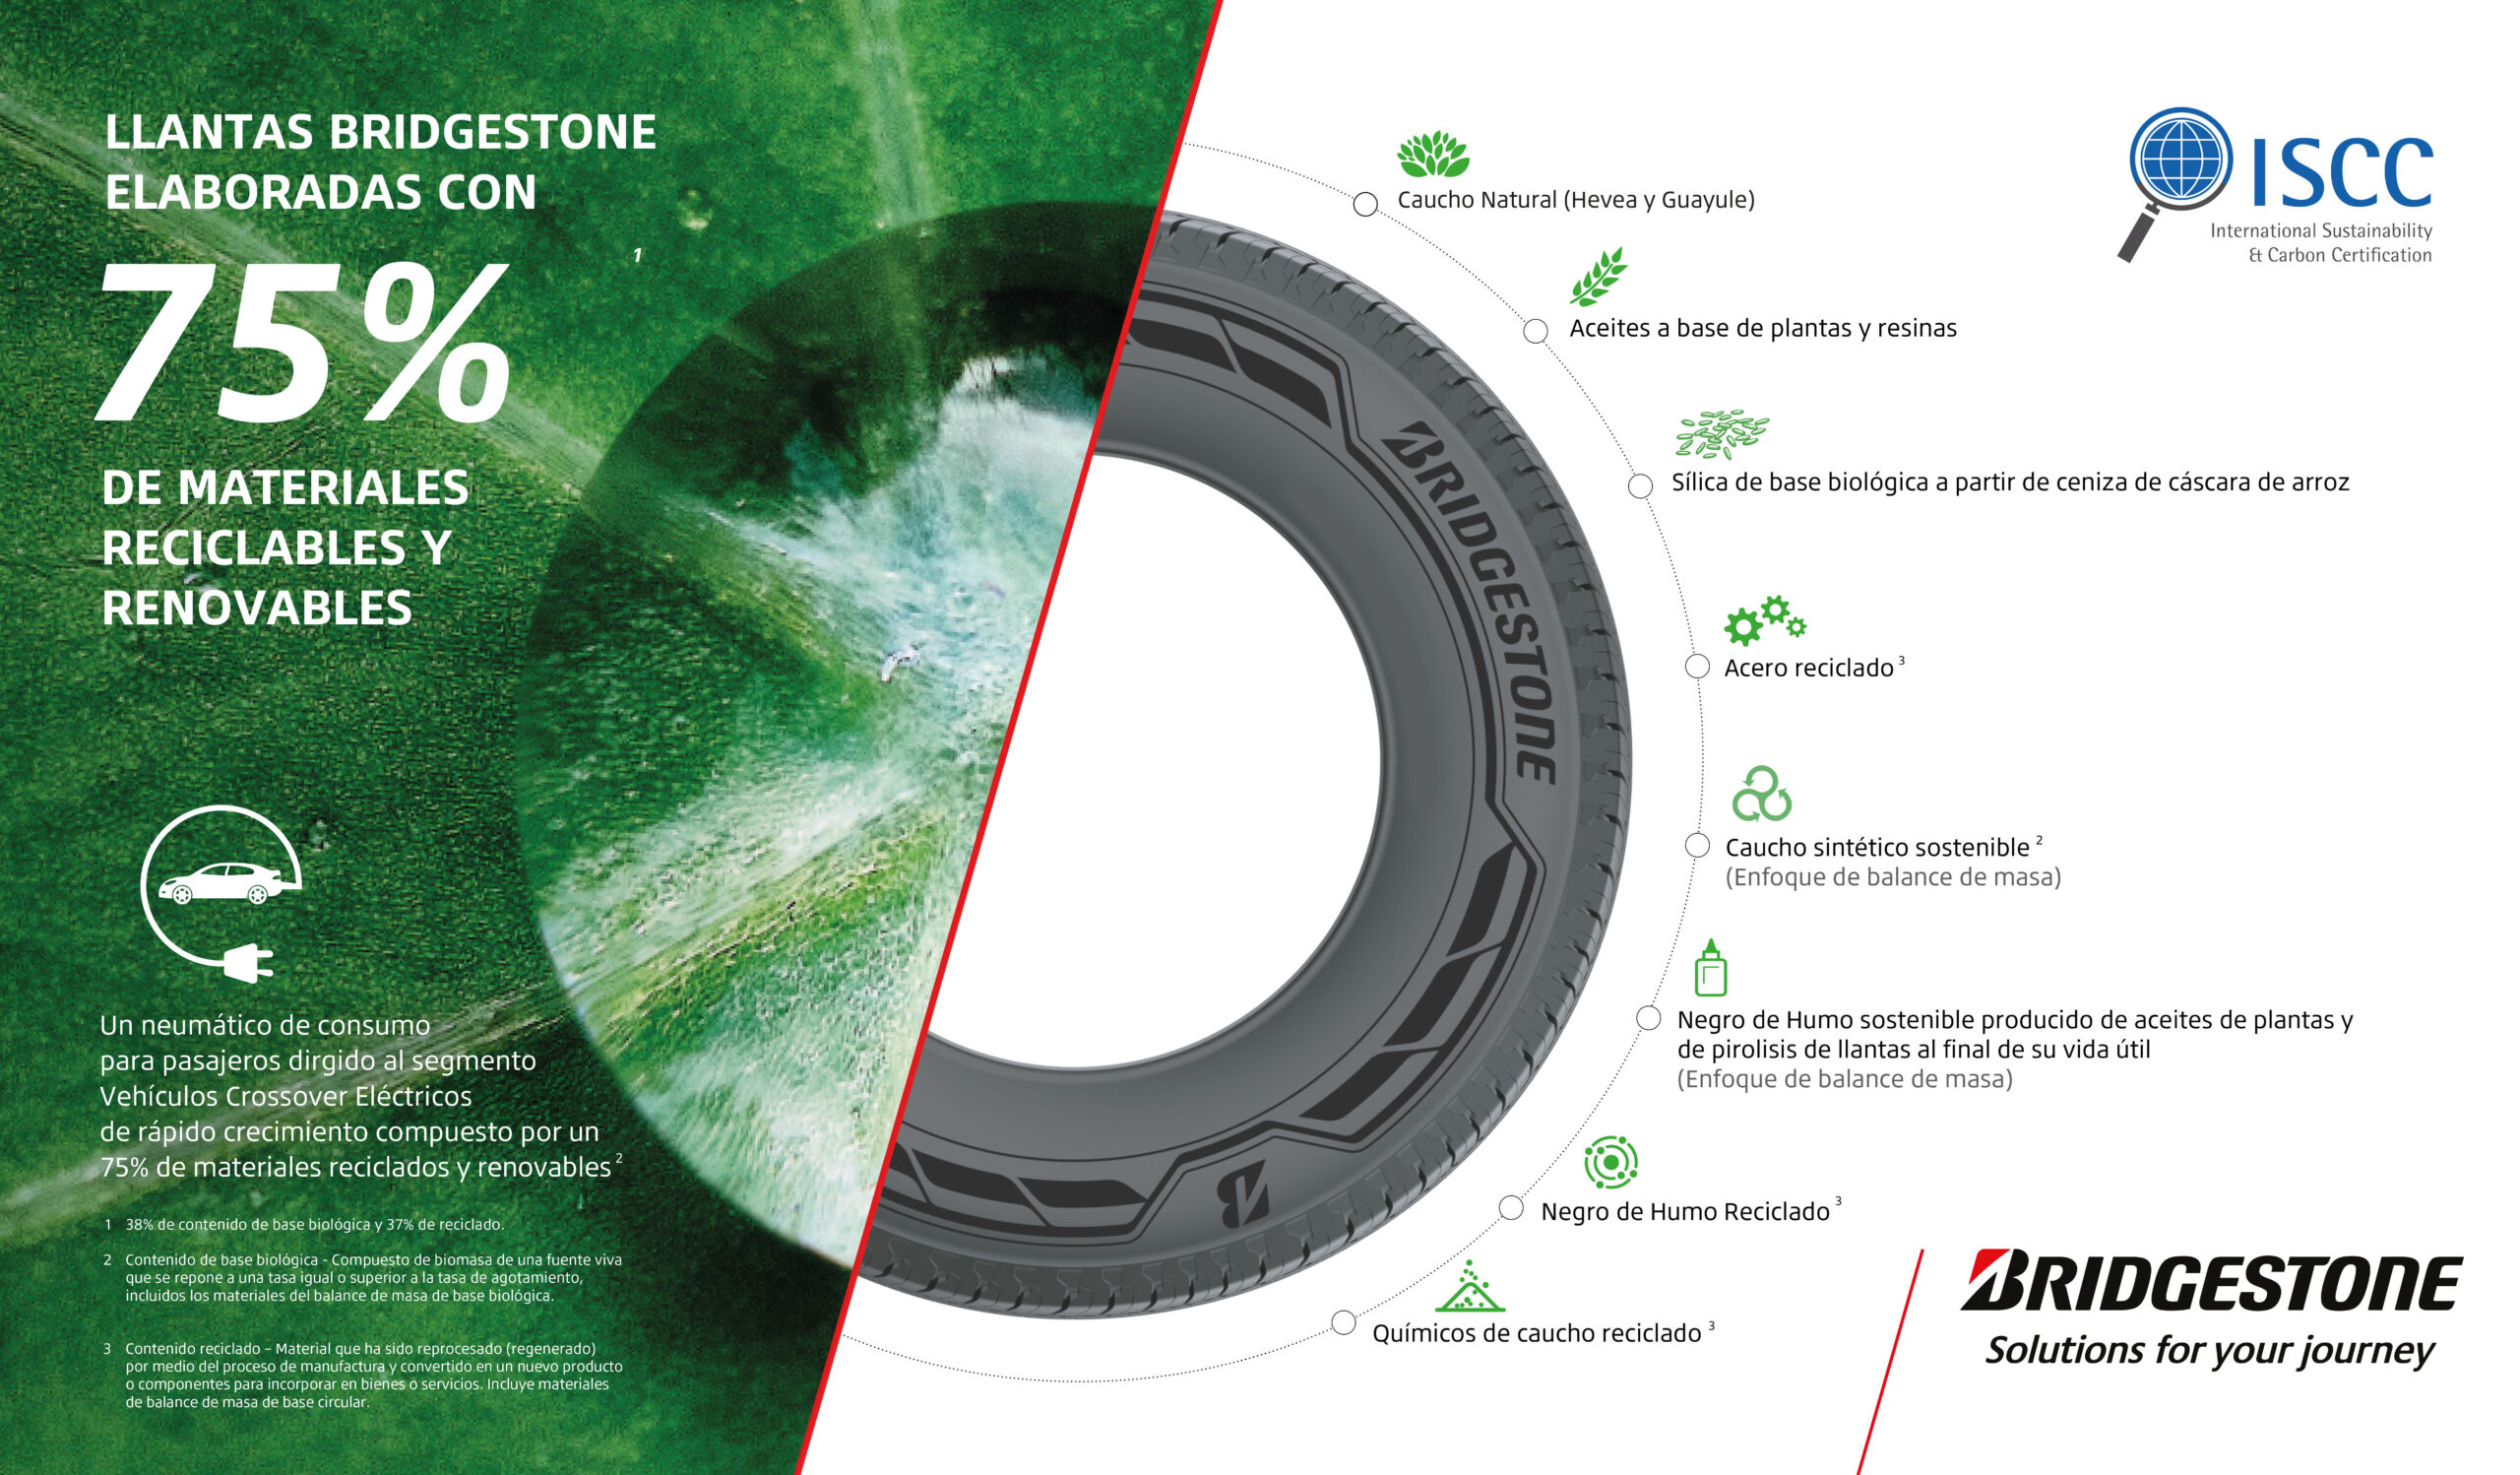 Bridgestone Desarrolla Llantas Utilizando Un 75% De Materiales Reciclados y Renovables